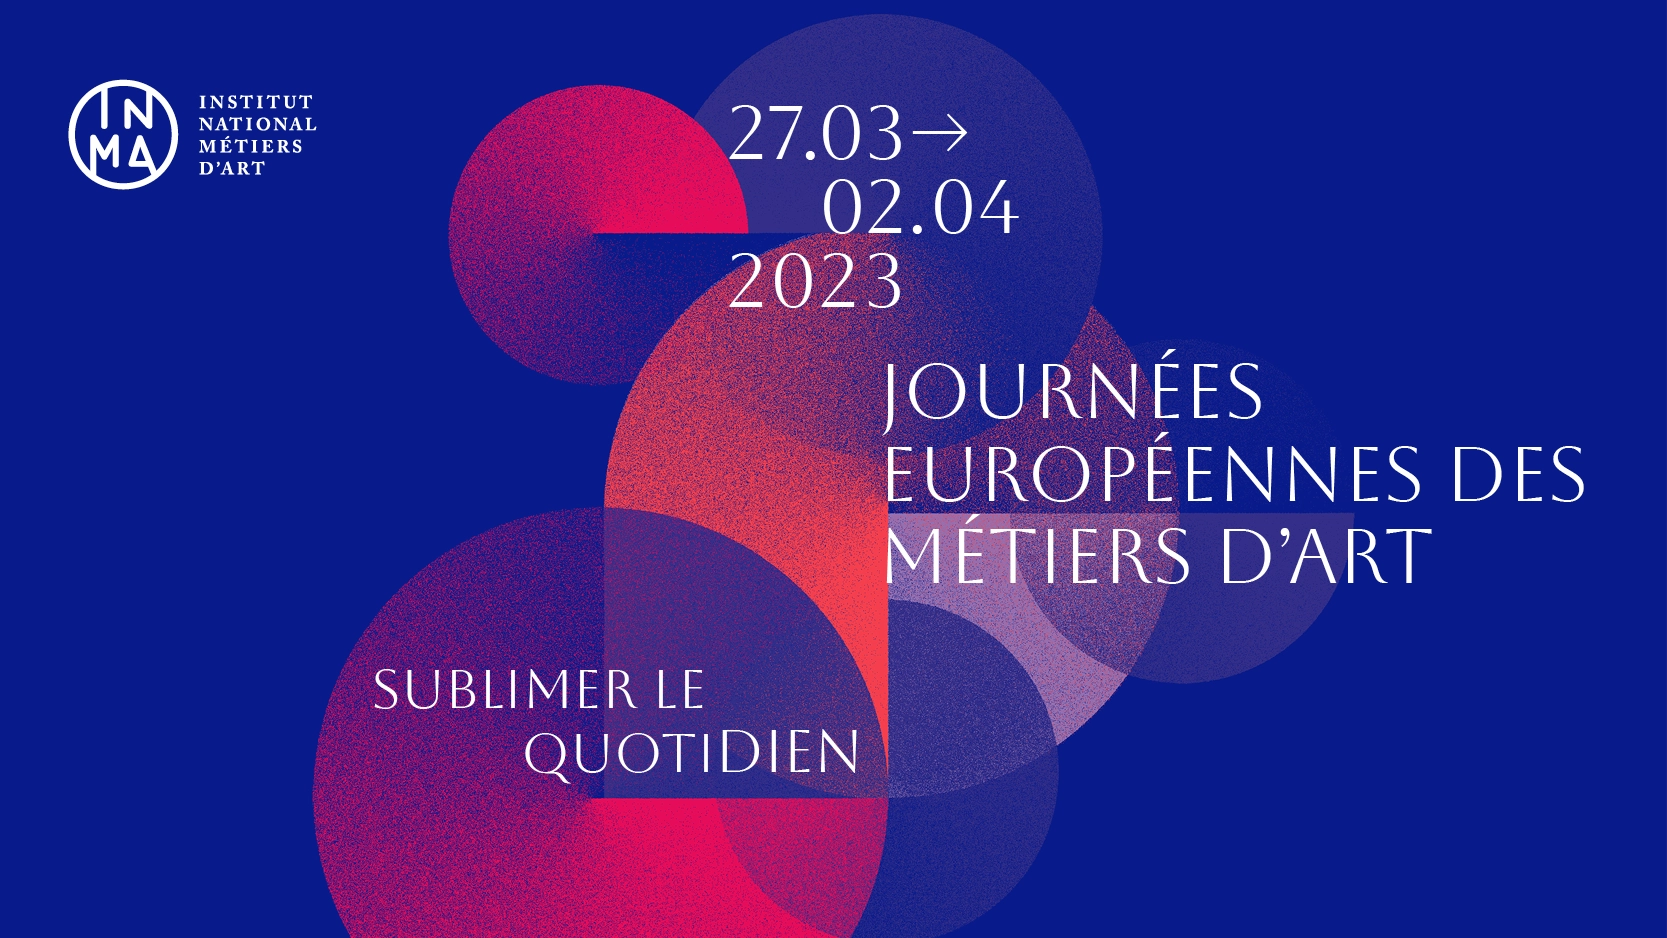 Les Journées Européennes des Métiers d’Art 2023